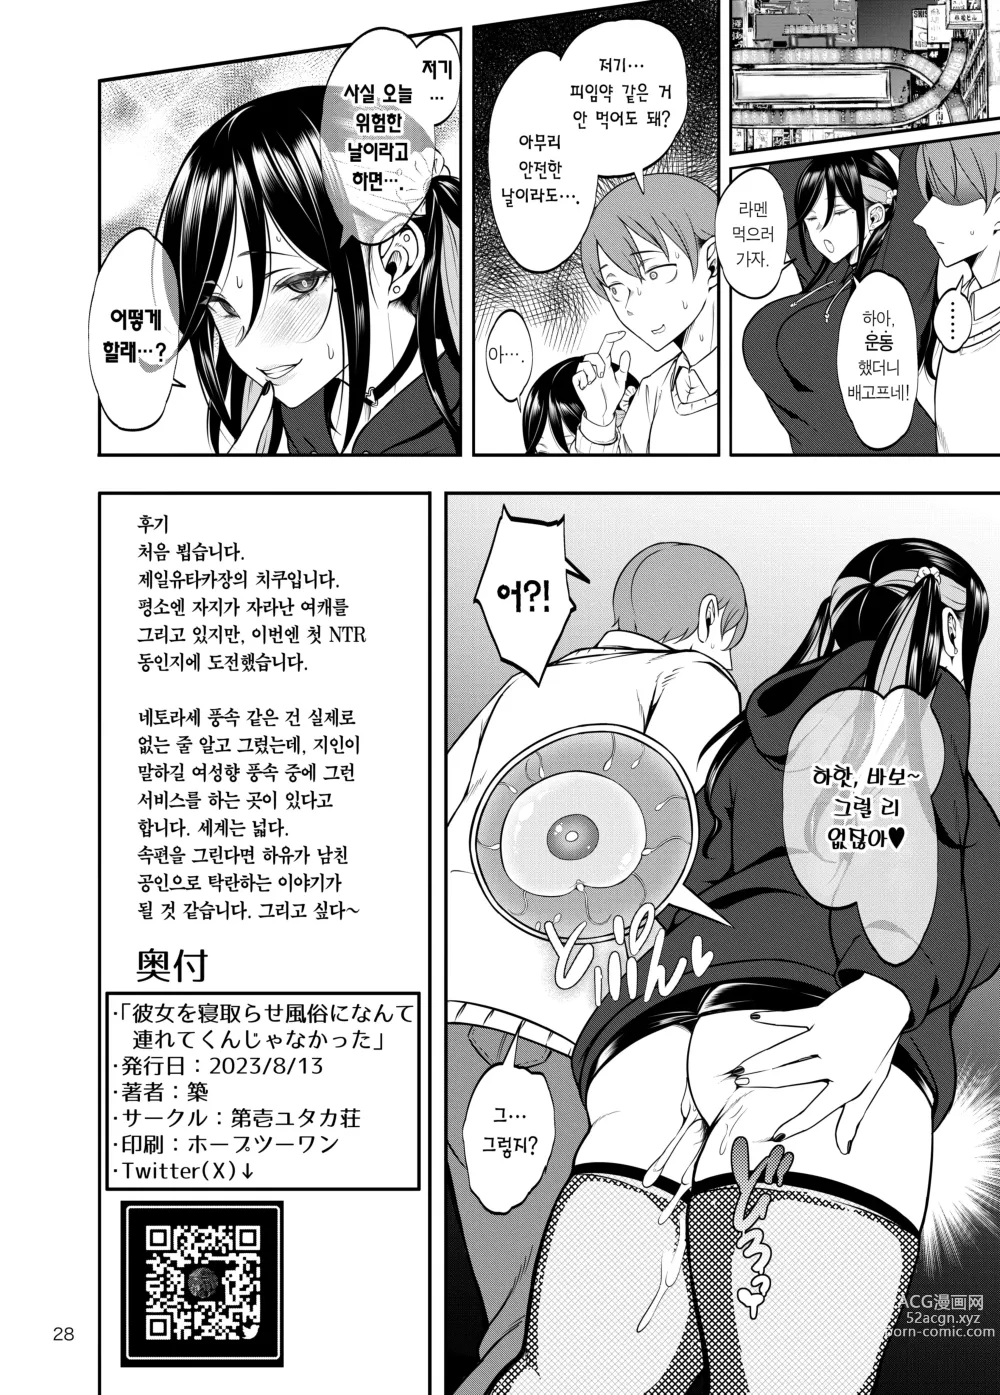 Page 29 of doujinshi 여친을 네토라세 풍속 같은 곳에 데려가는 게 아니었는데 (decensored)